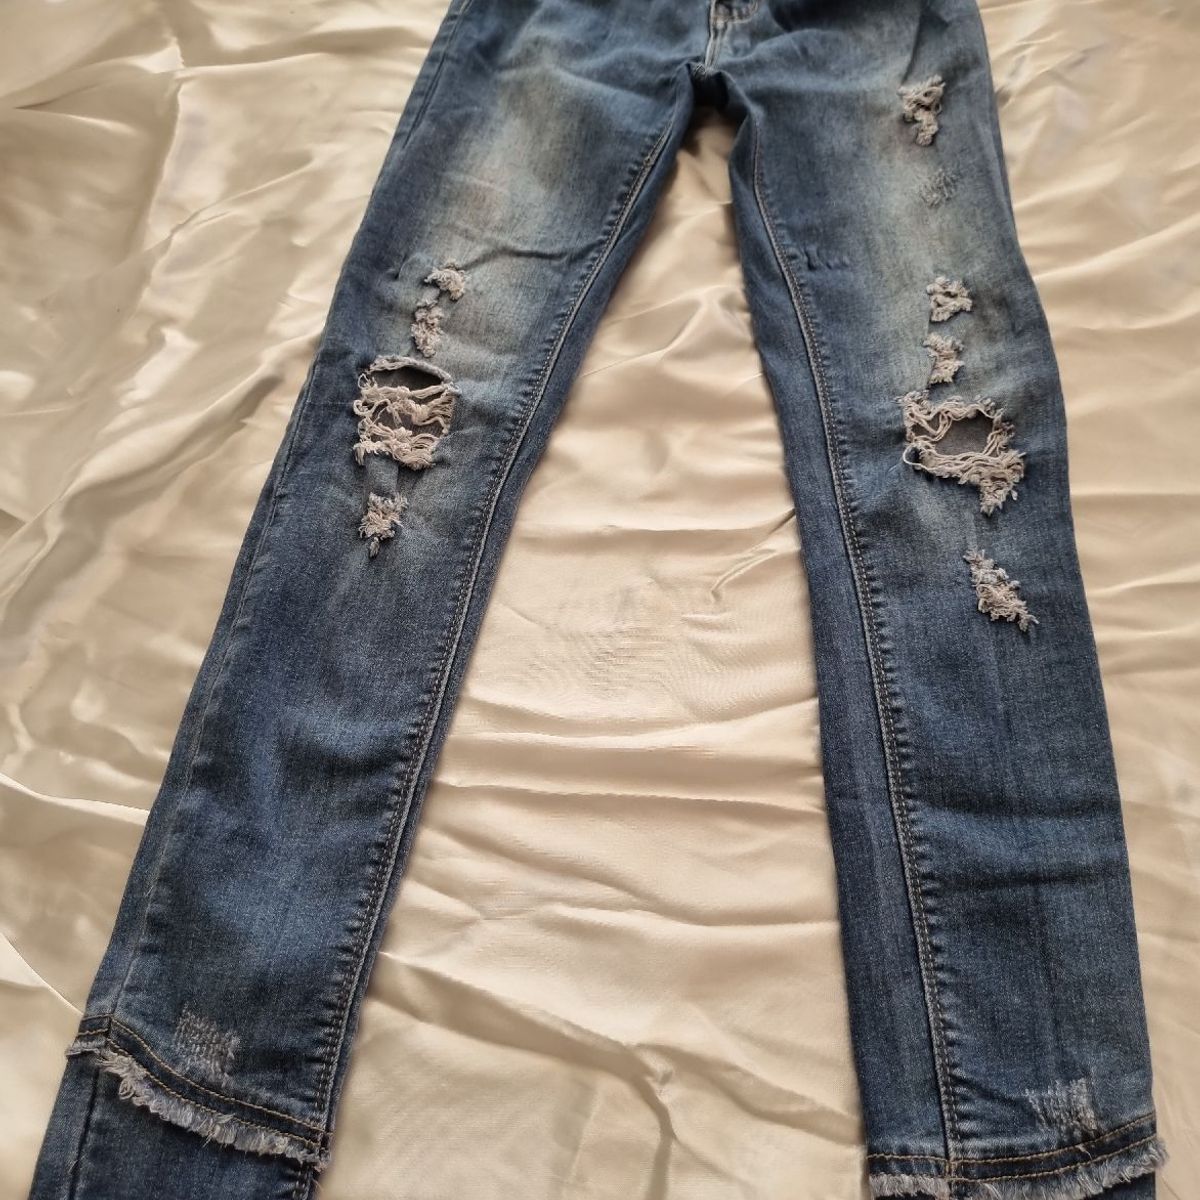 Jeans Azul, Calça Feminina Size 5 Usado 93355435